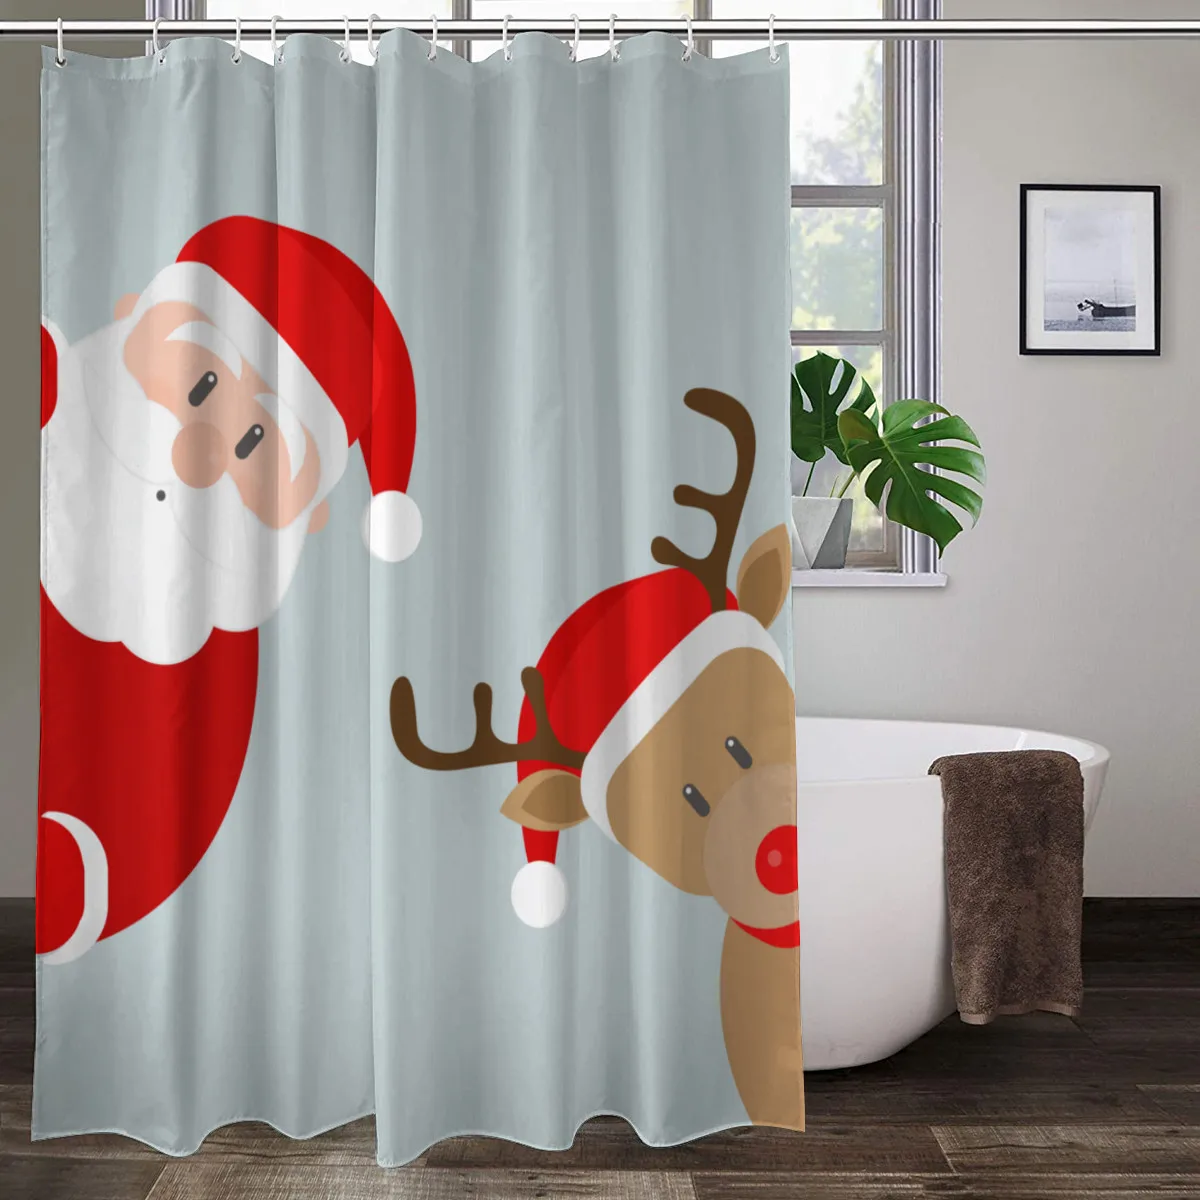 

Занавеска для душа с рисунком Санта-Клауса, снеговика, лося для детей, Рождественское украшение для дома на Рождество, занавески для ванной ...